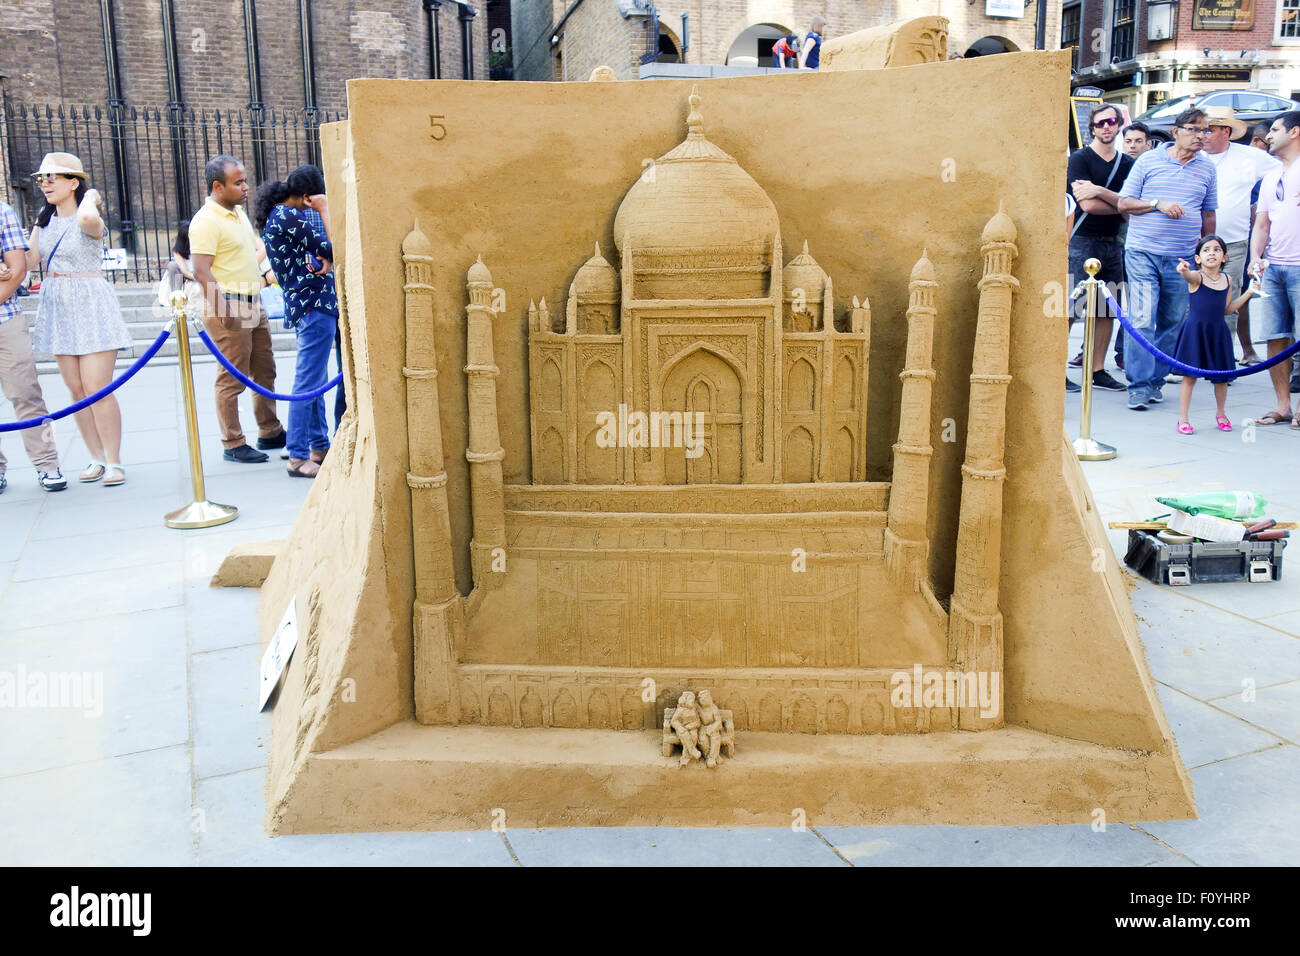 Planète lui n'utiliser du sable château dispose d''Inde Taj Mahal pour promouvoir leur nouveau livre intitulé 'ultime'. Travelist Banque D'Images